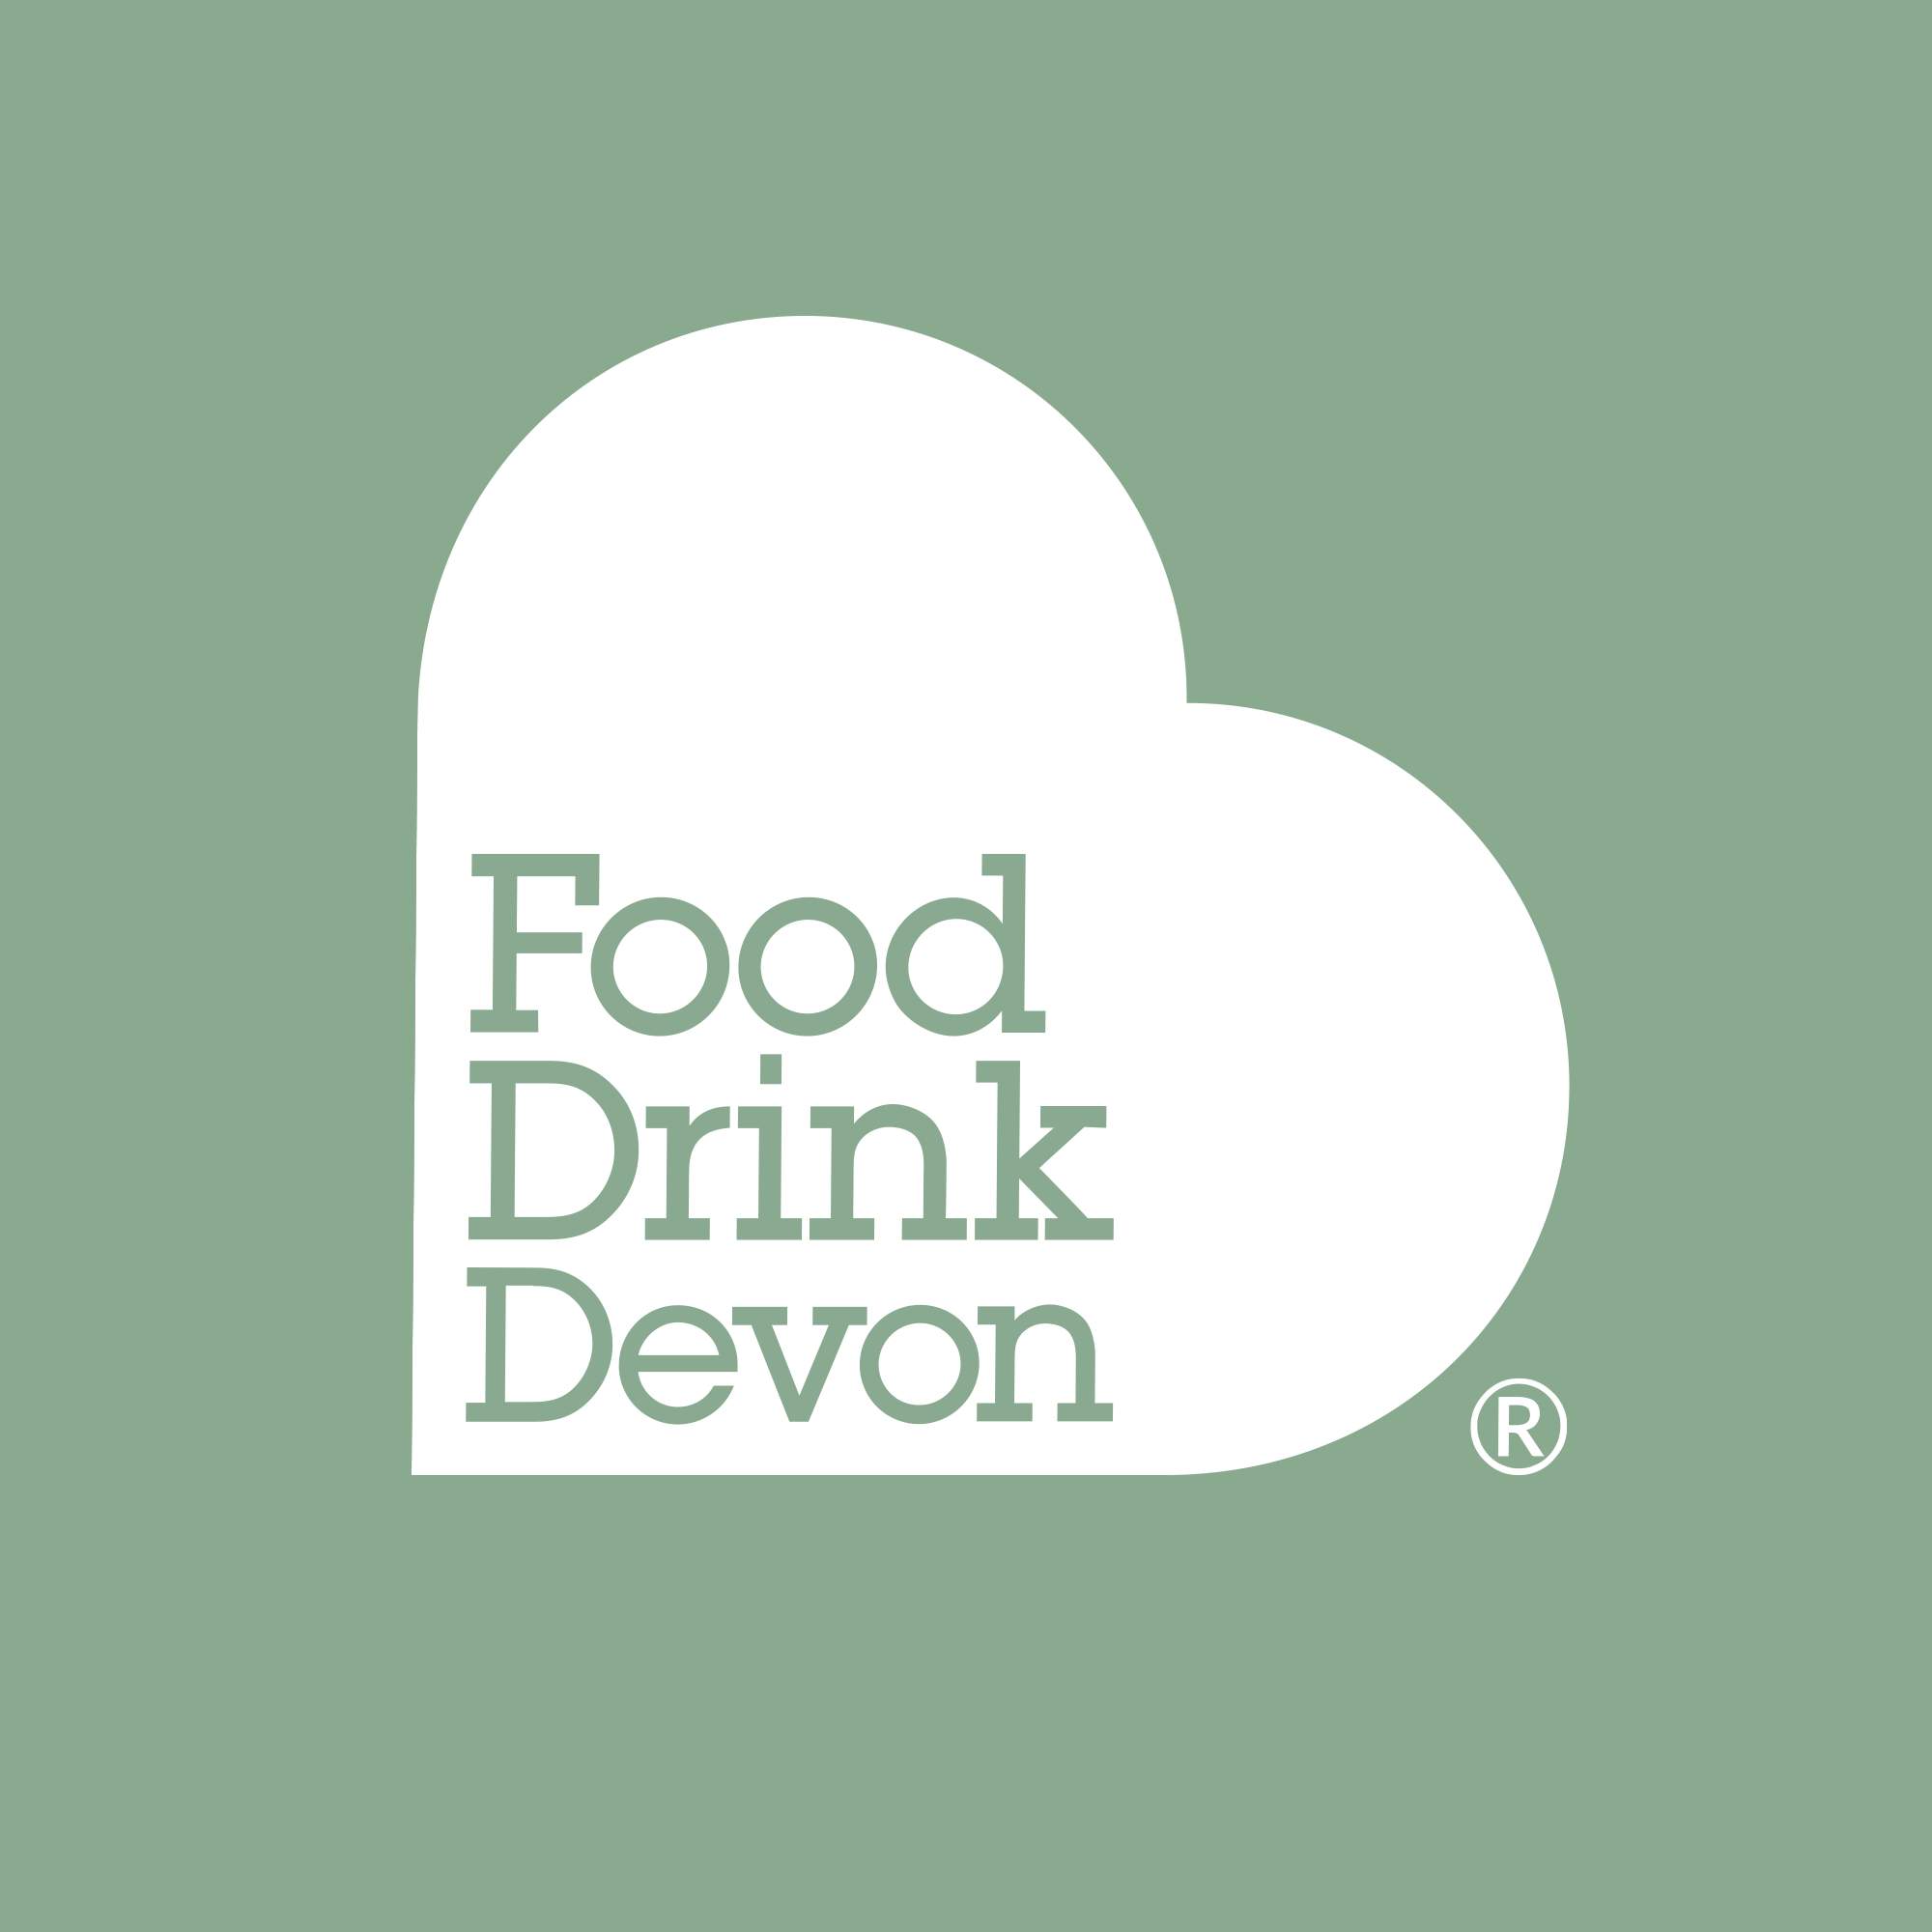 Food Drink Devon